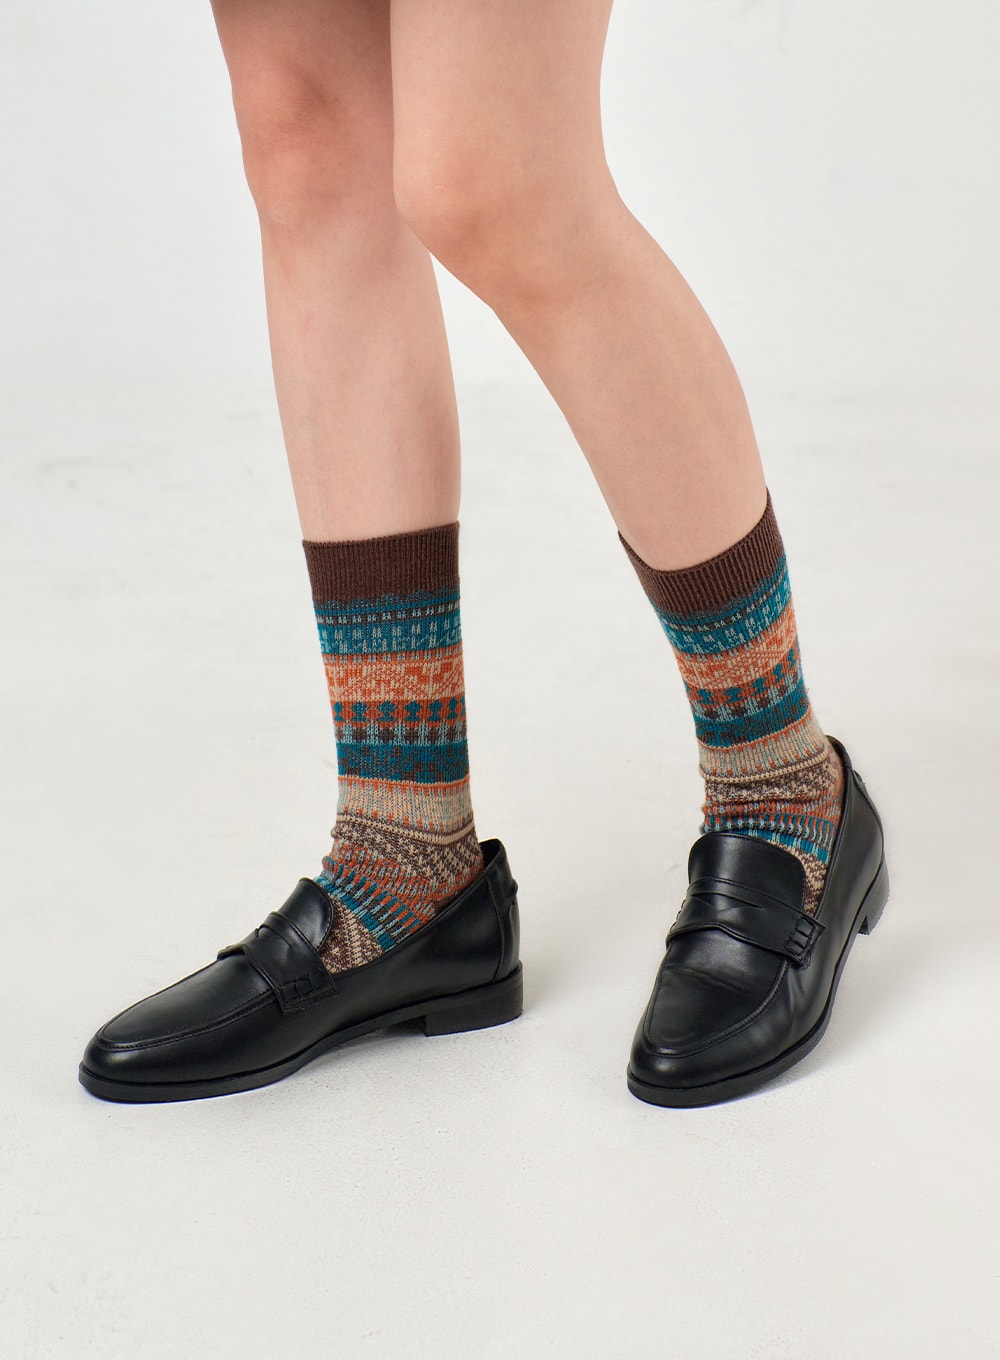 vintage-striped-socks-of405 / Brown